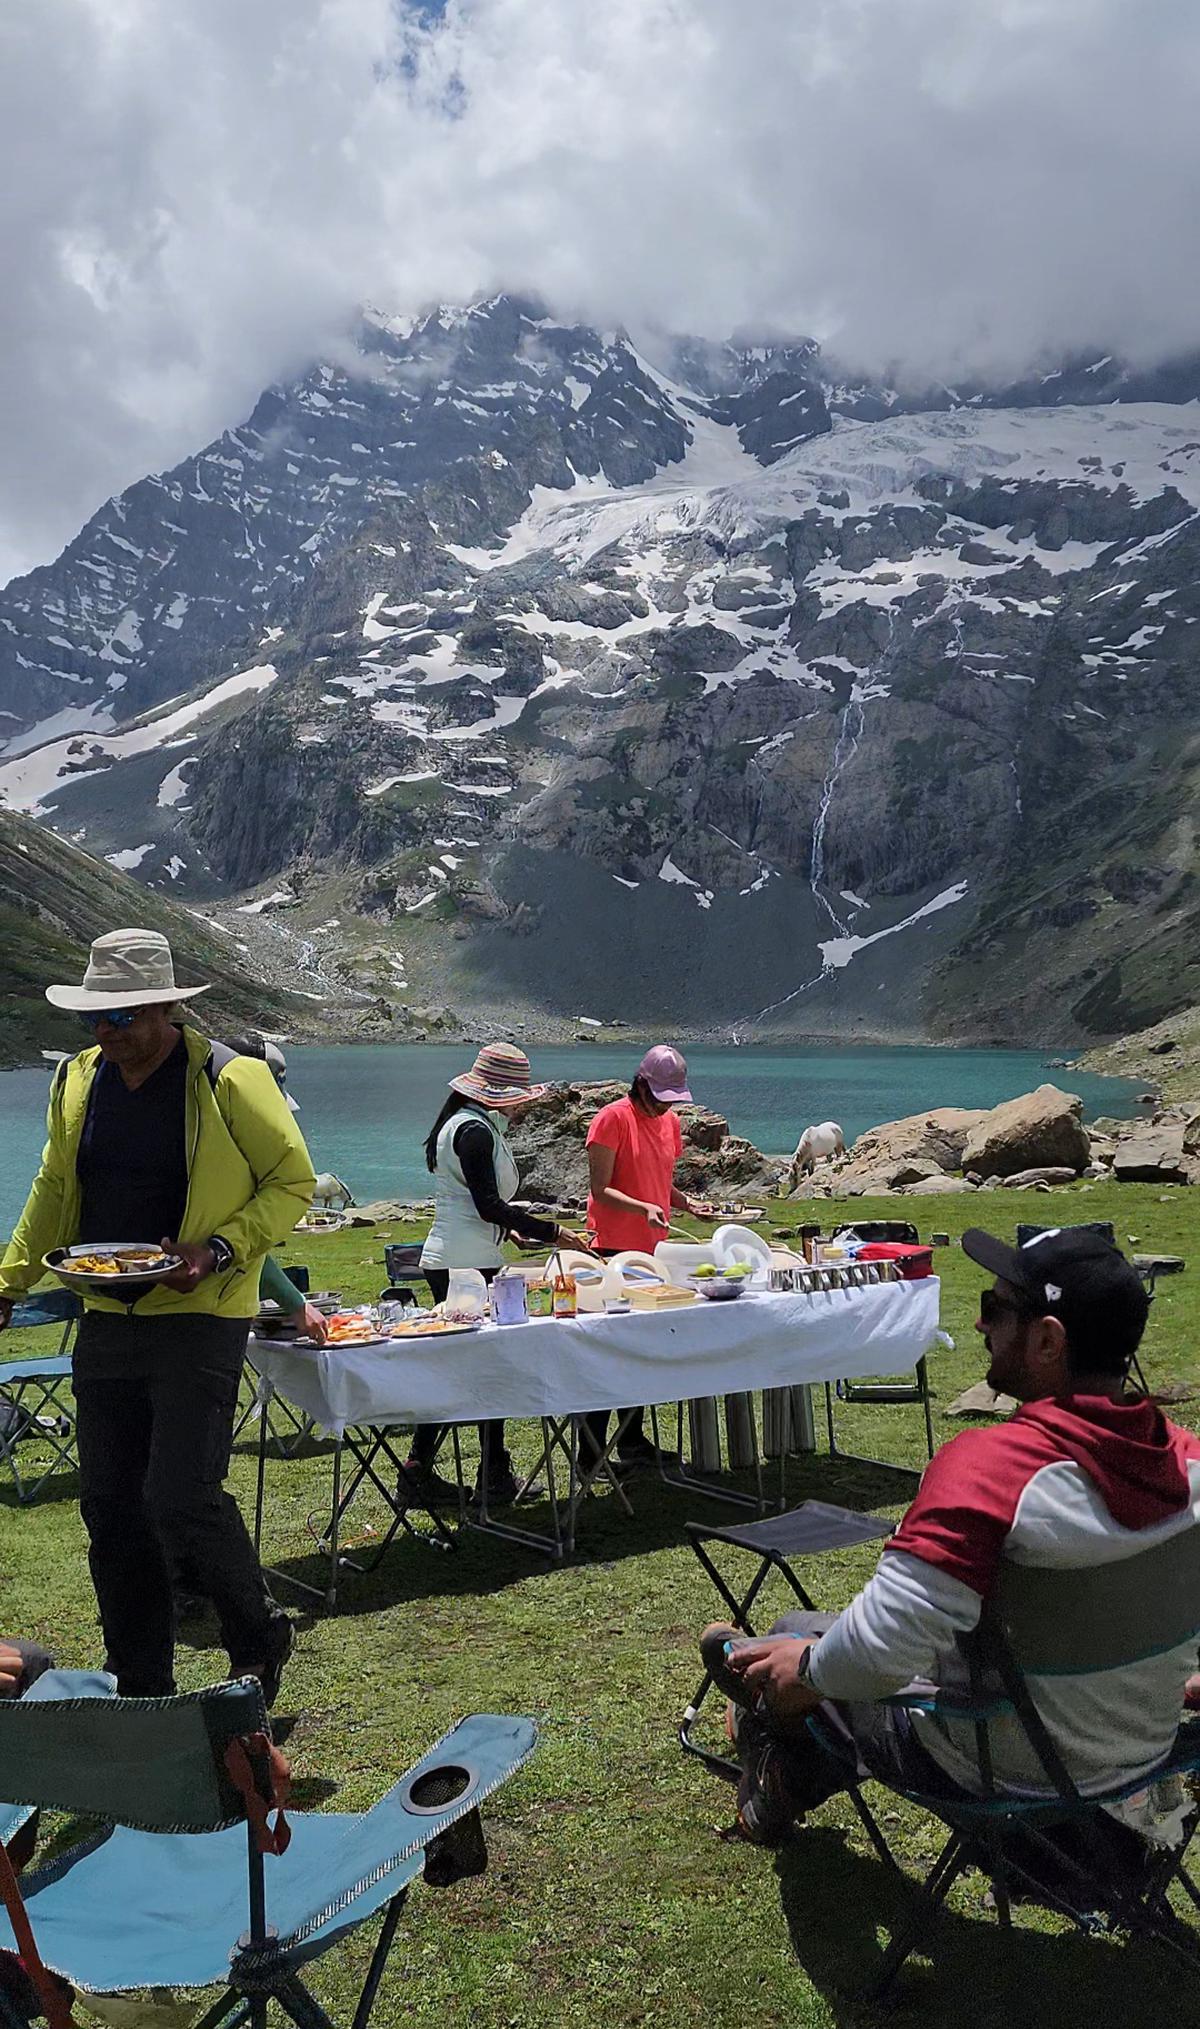 Lunch by Nundkol lake in Kashmir